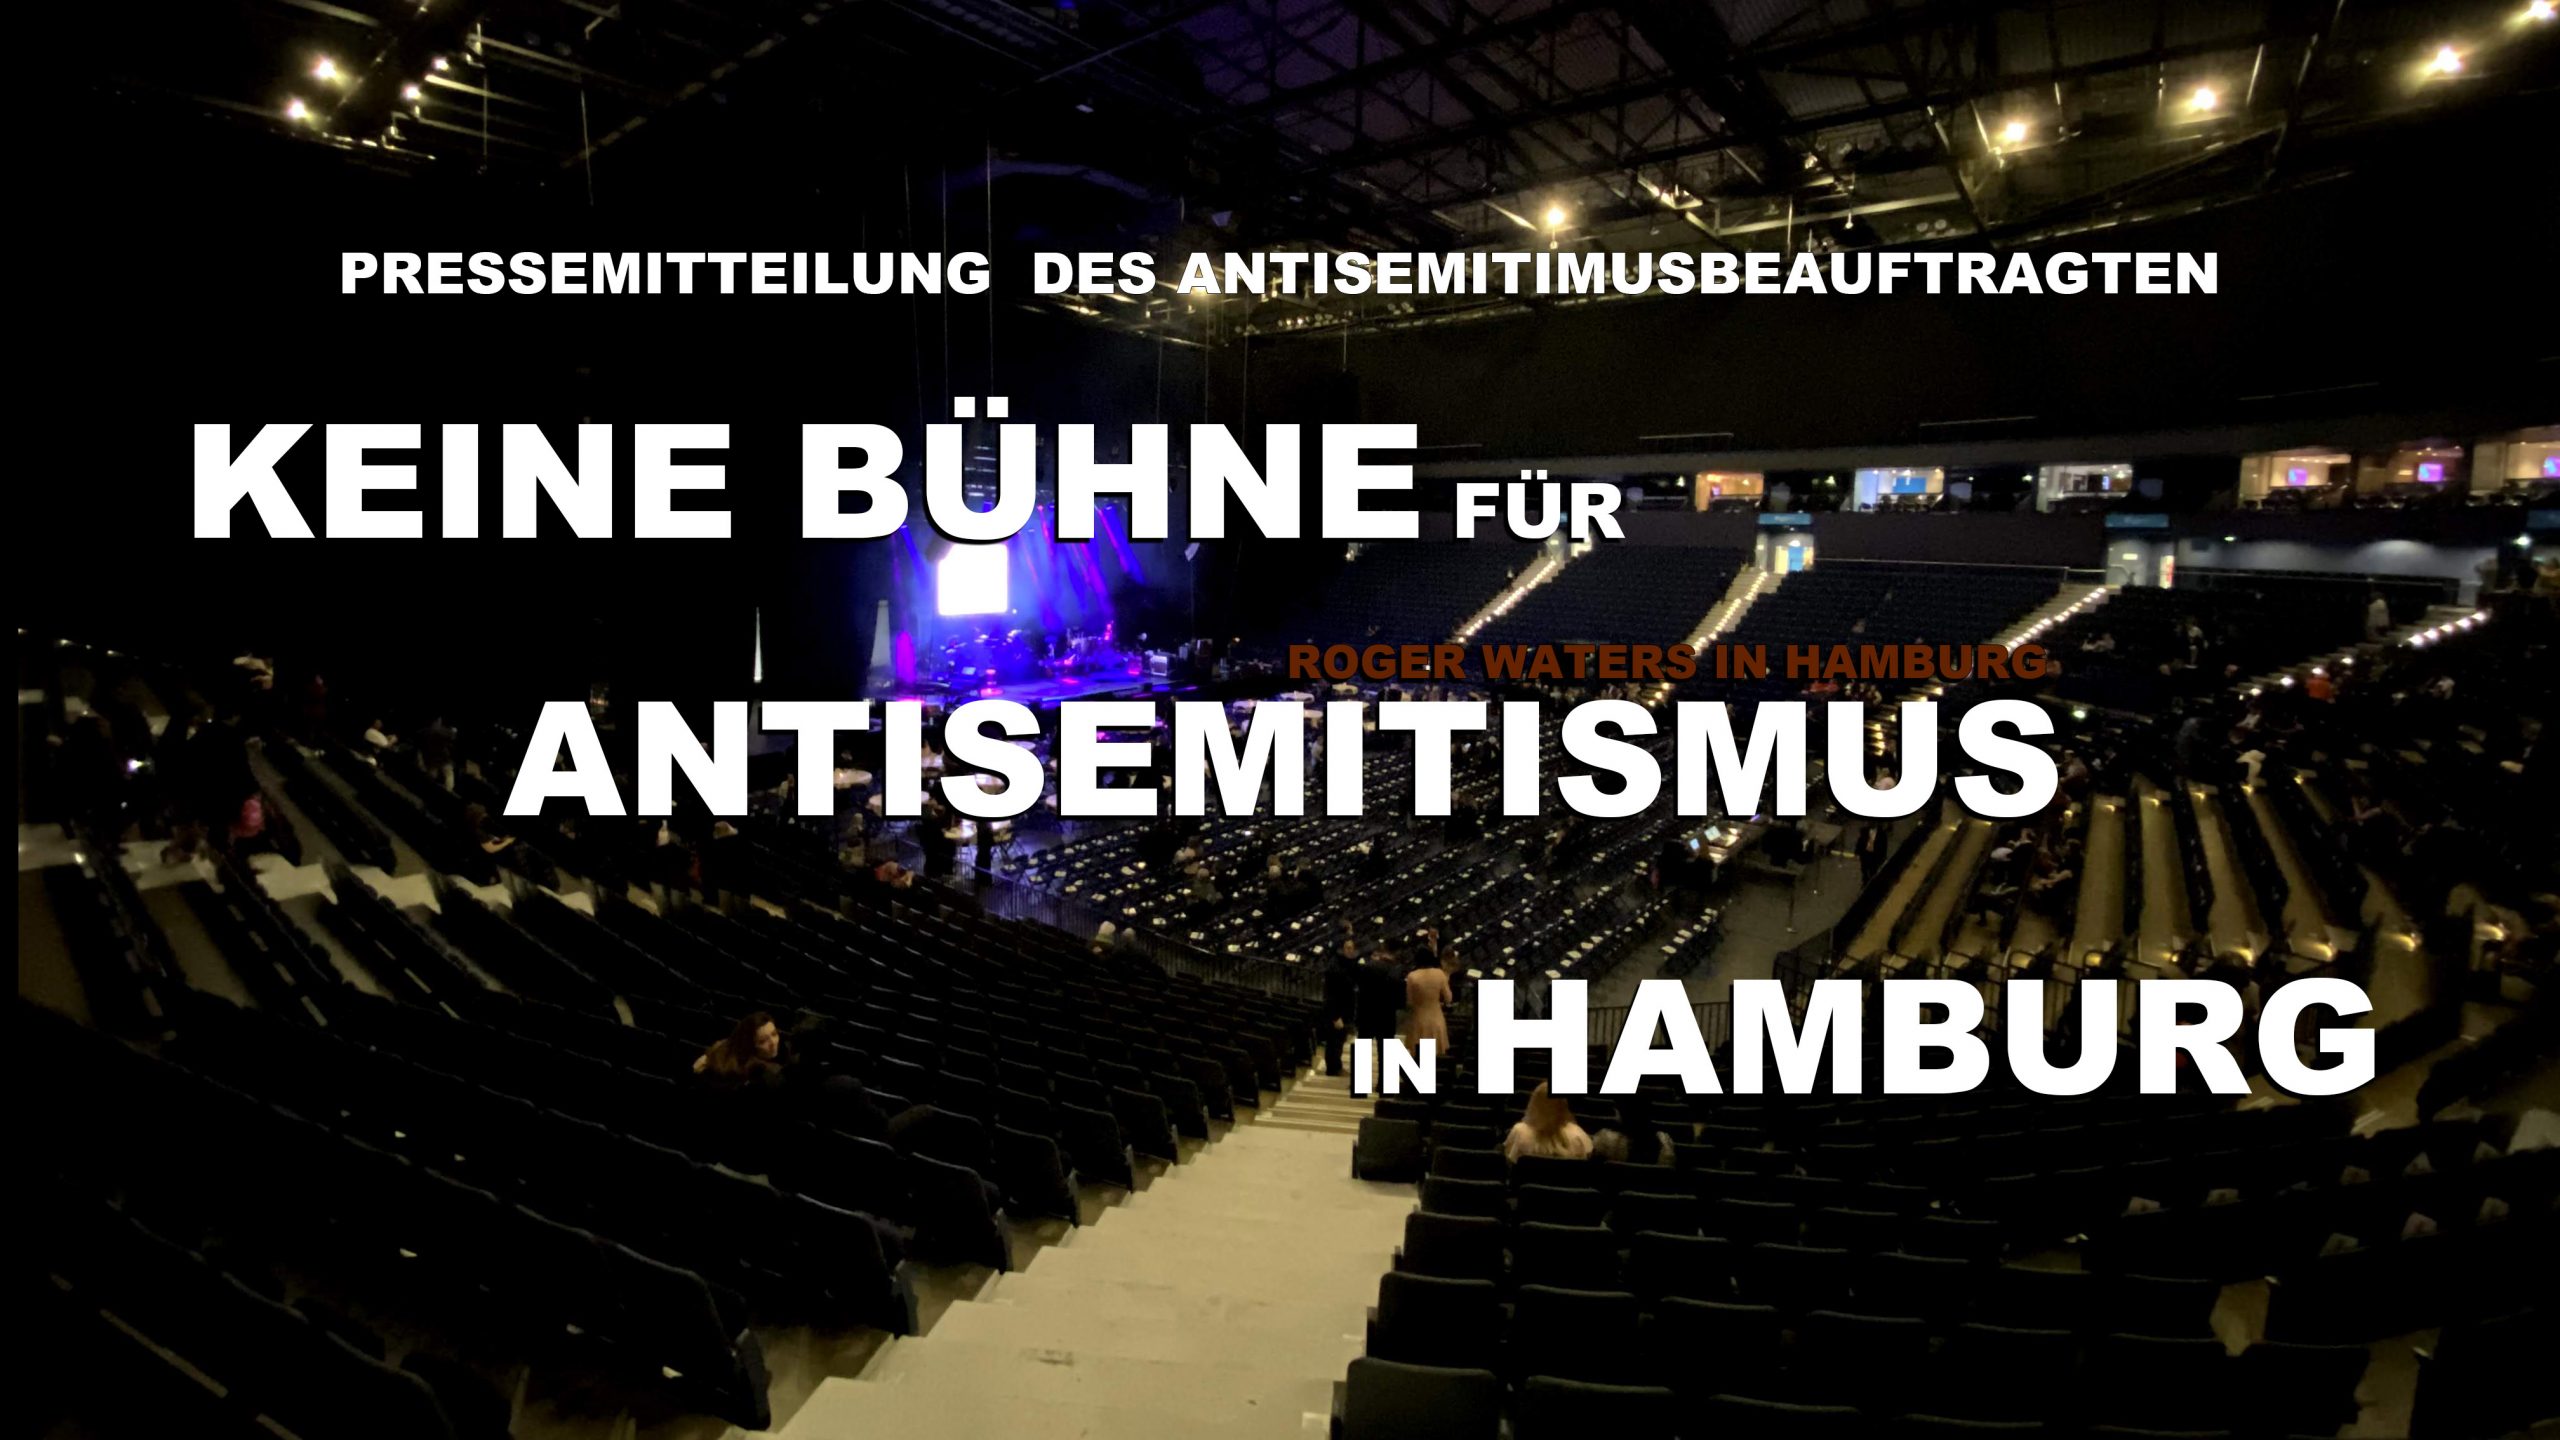 Pressemittelung: Roger Waters in Hamburg / Keine Bühne für Antisemitismus in Hamburg